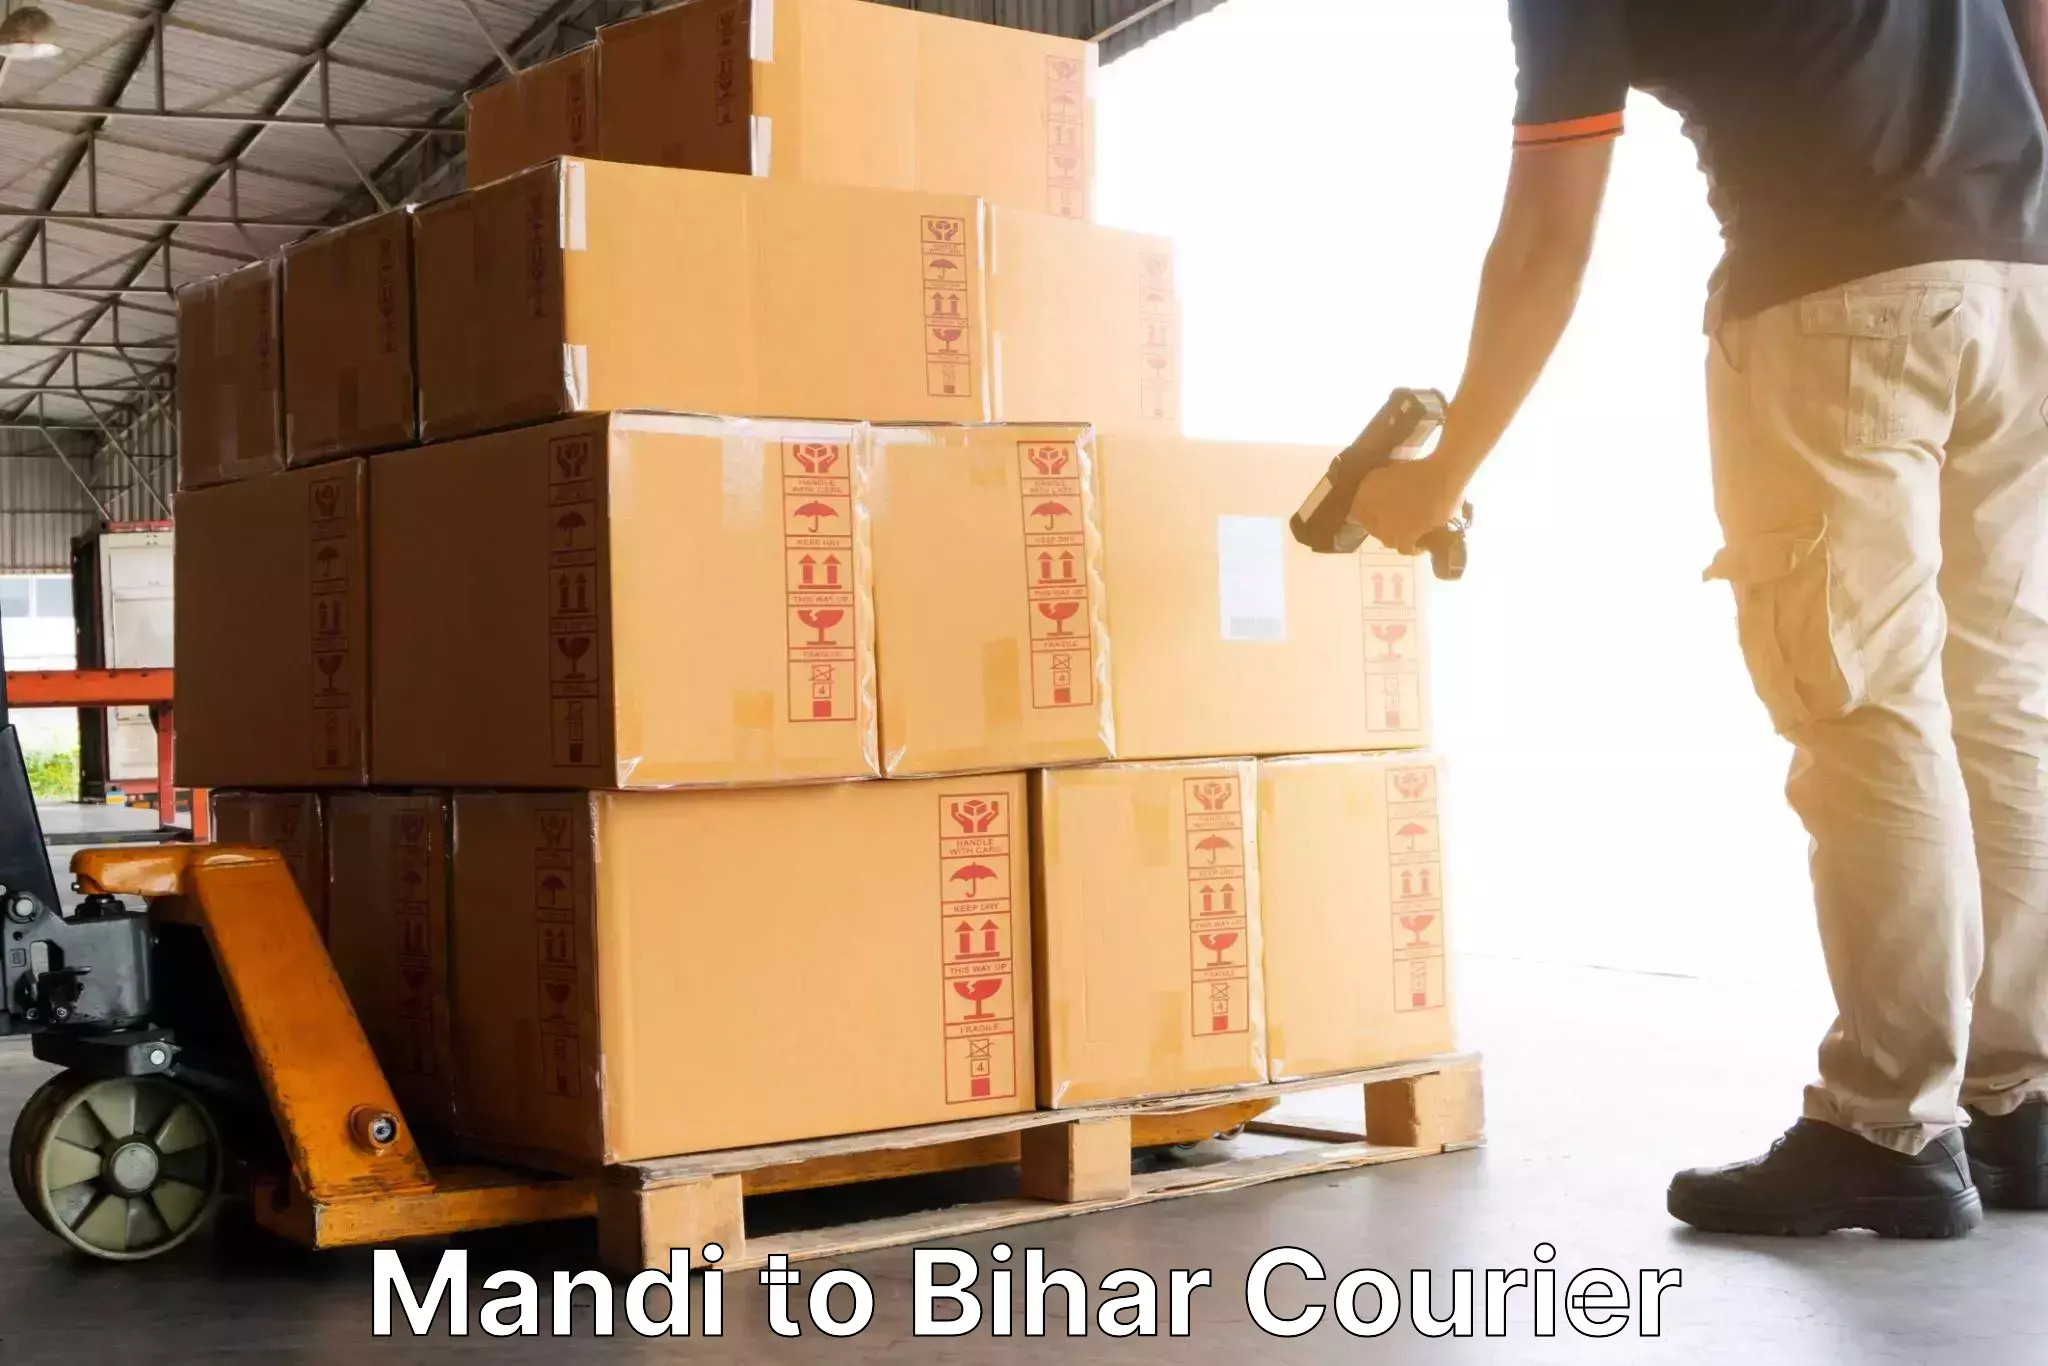 Online shipping calculator Mandi to Khodaganj